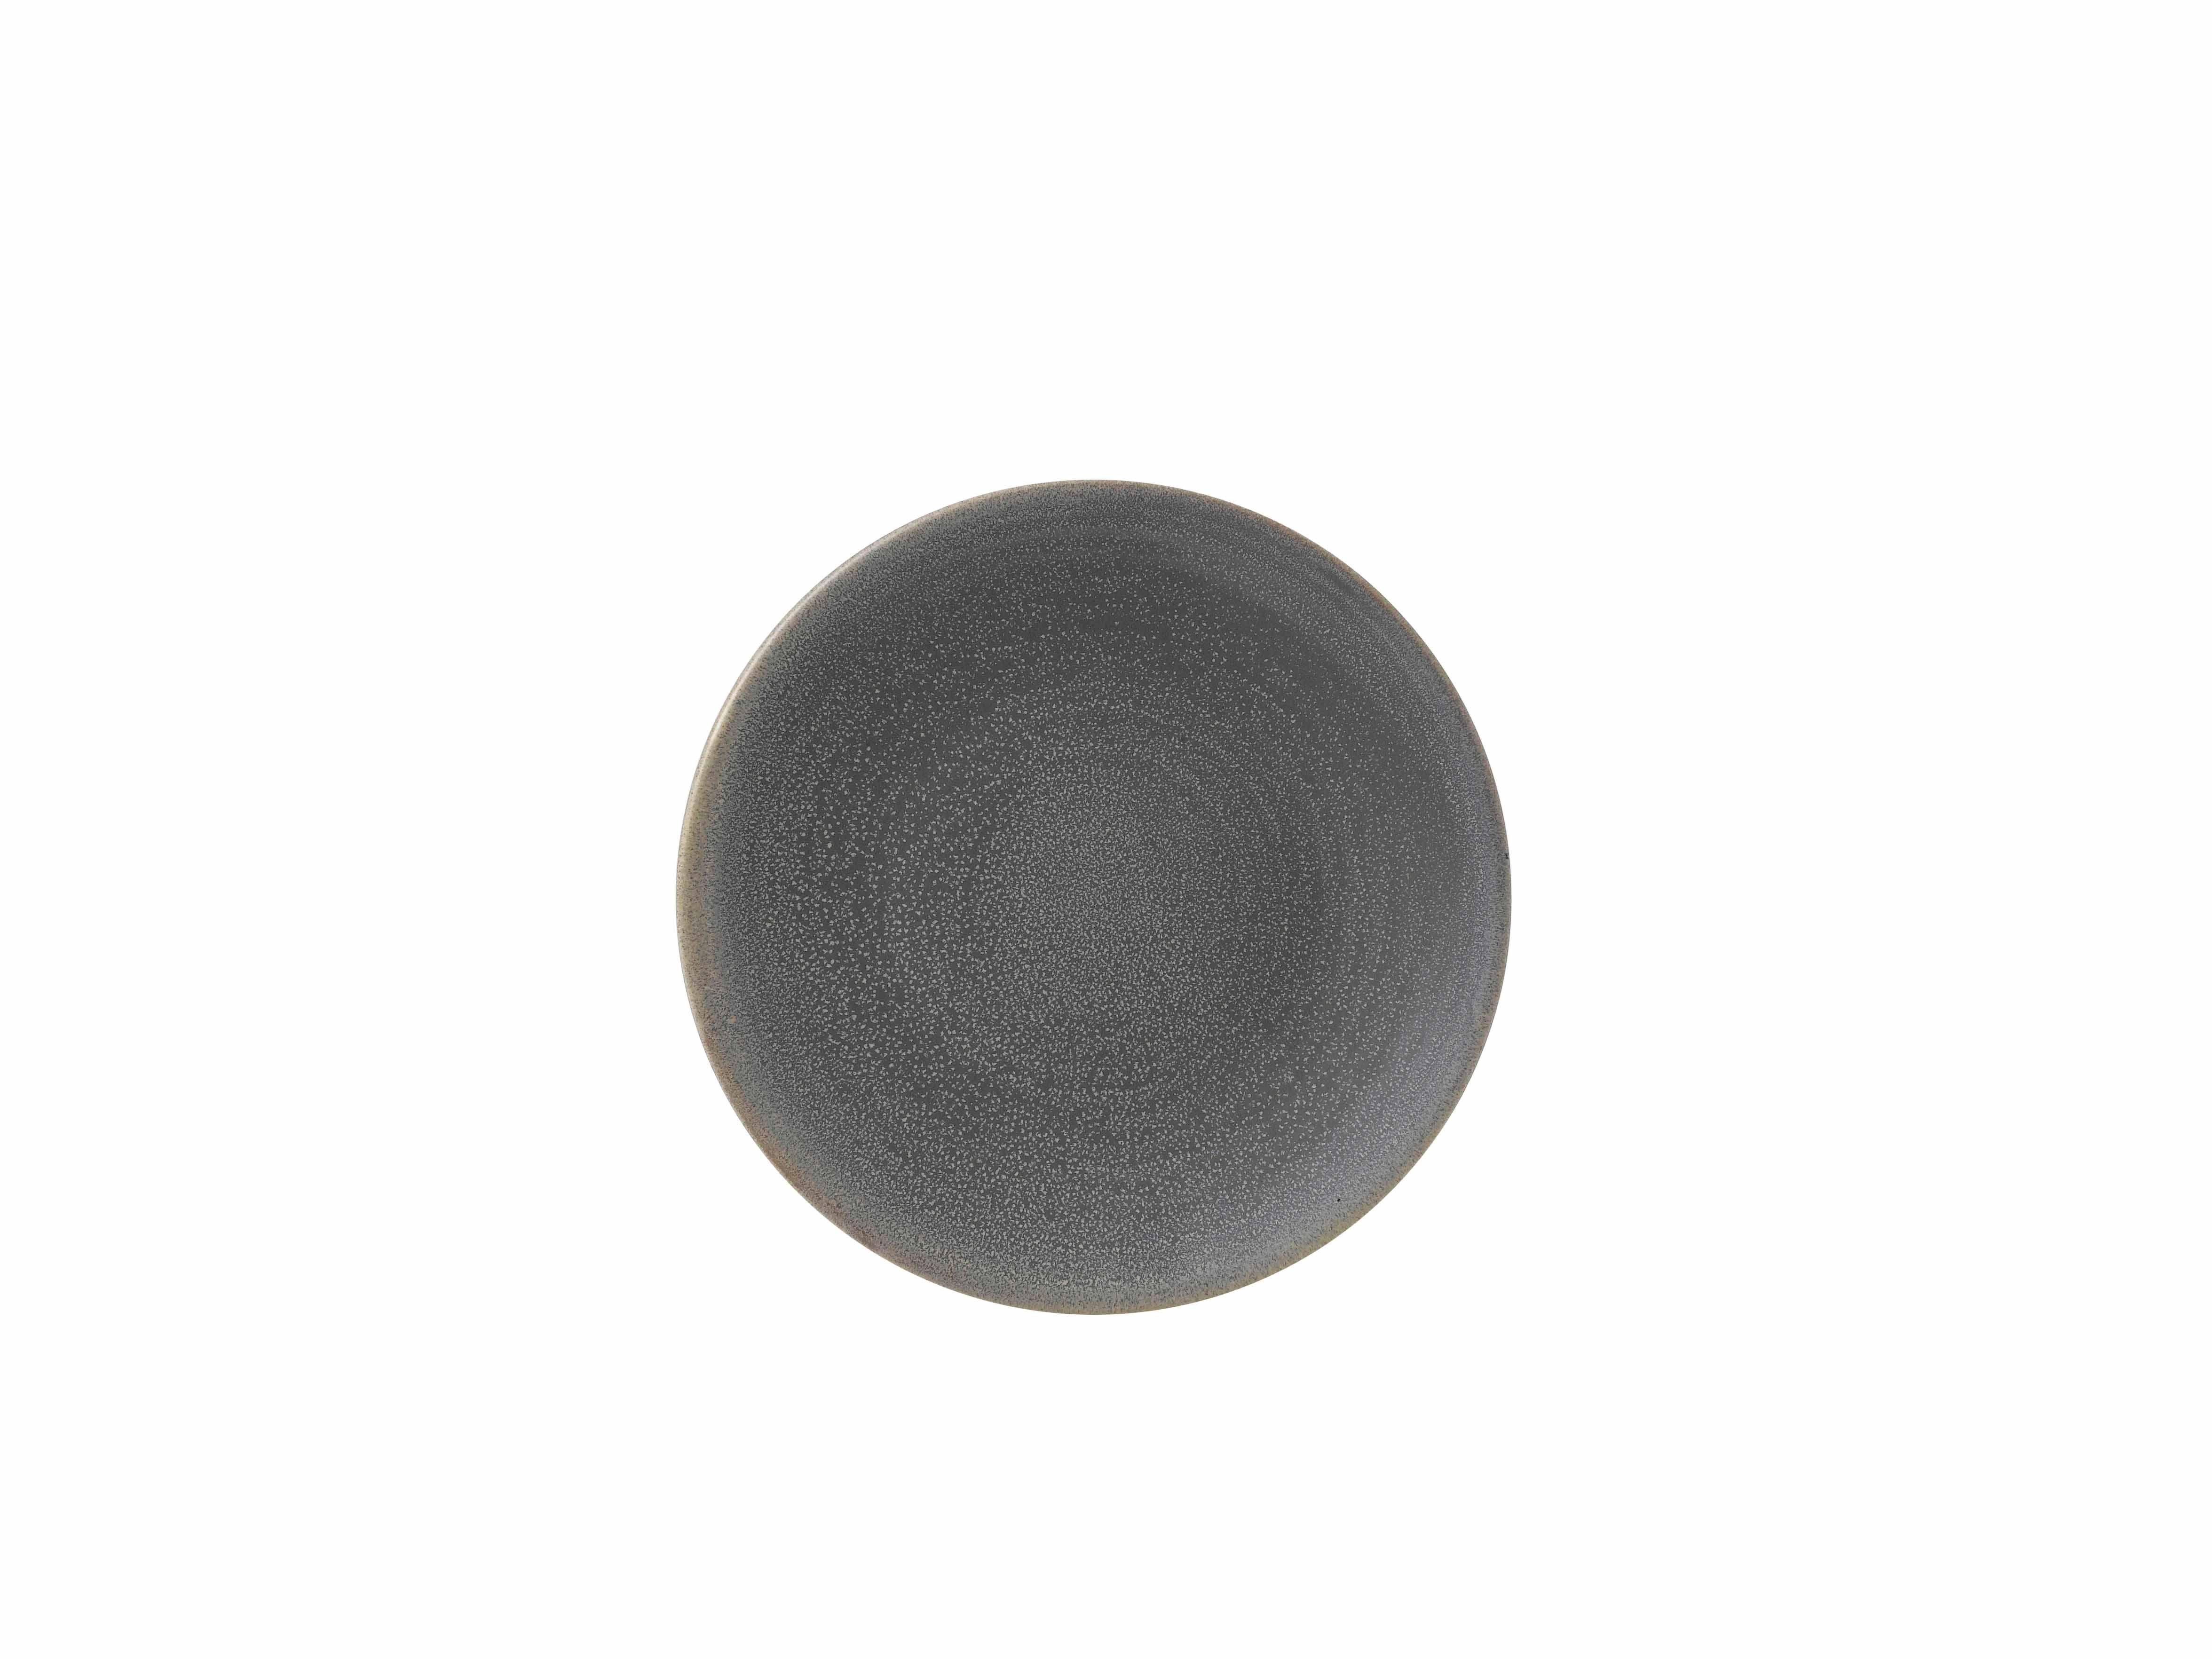 Stück, Evo Flach 6 Dudson Teller-Set Dudson Granit Teller 20,5cm Porzellan Rund Coup Granite